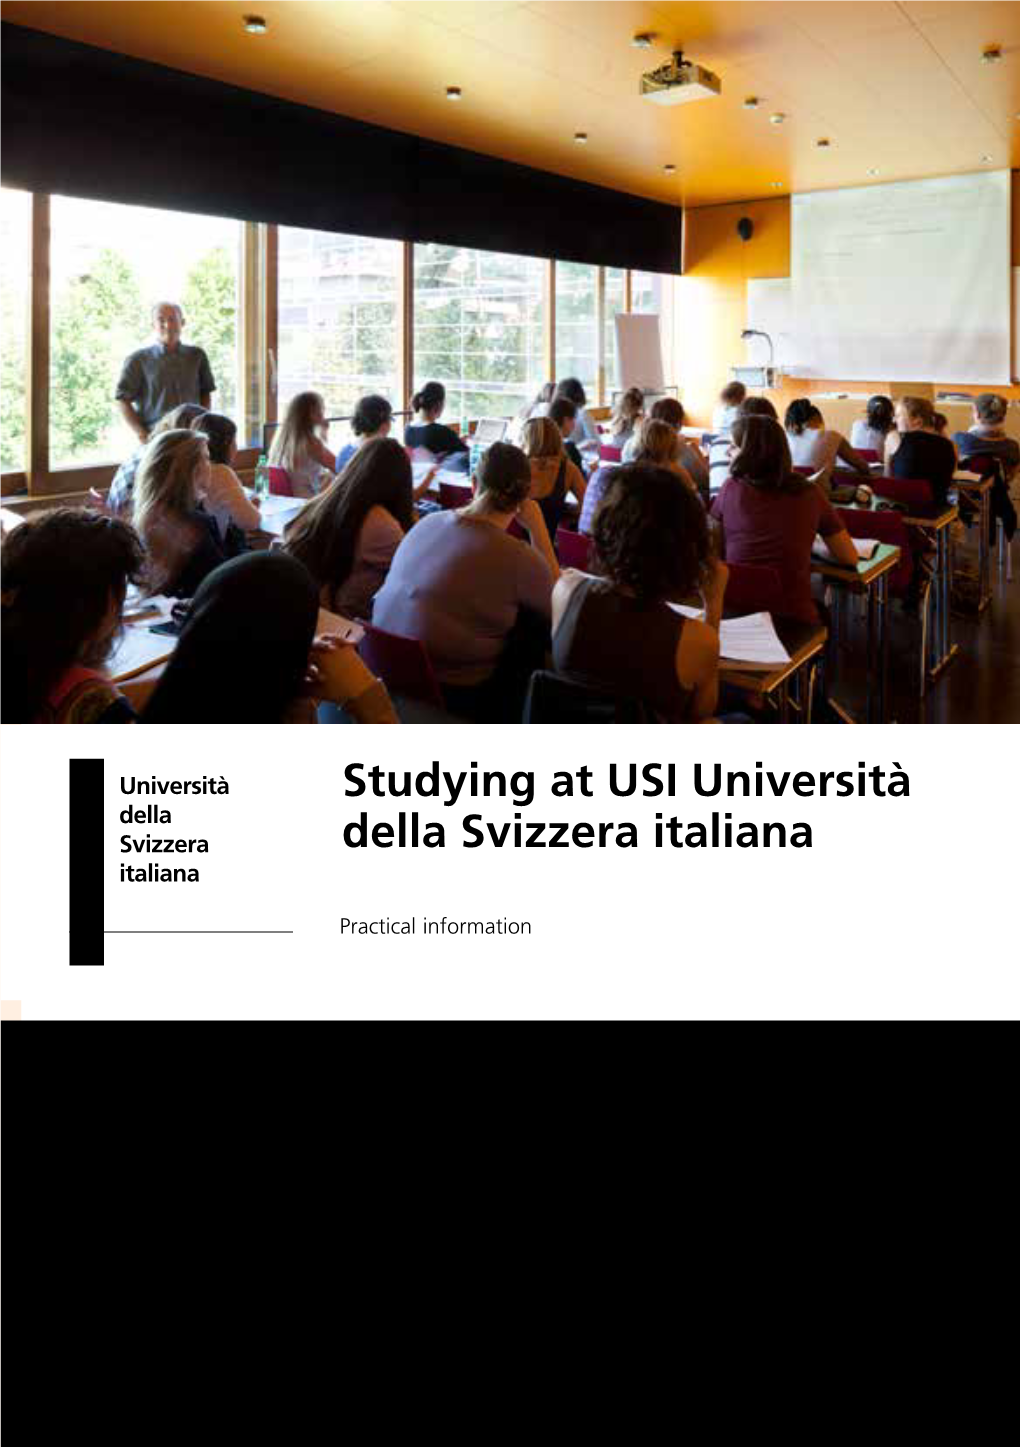 Studying at USI Università Della Svizzera Italiana